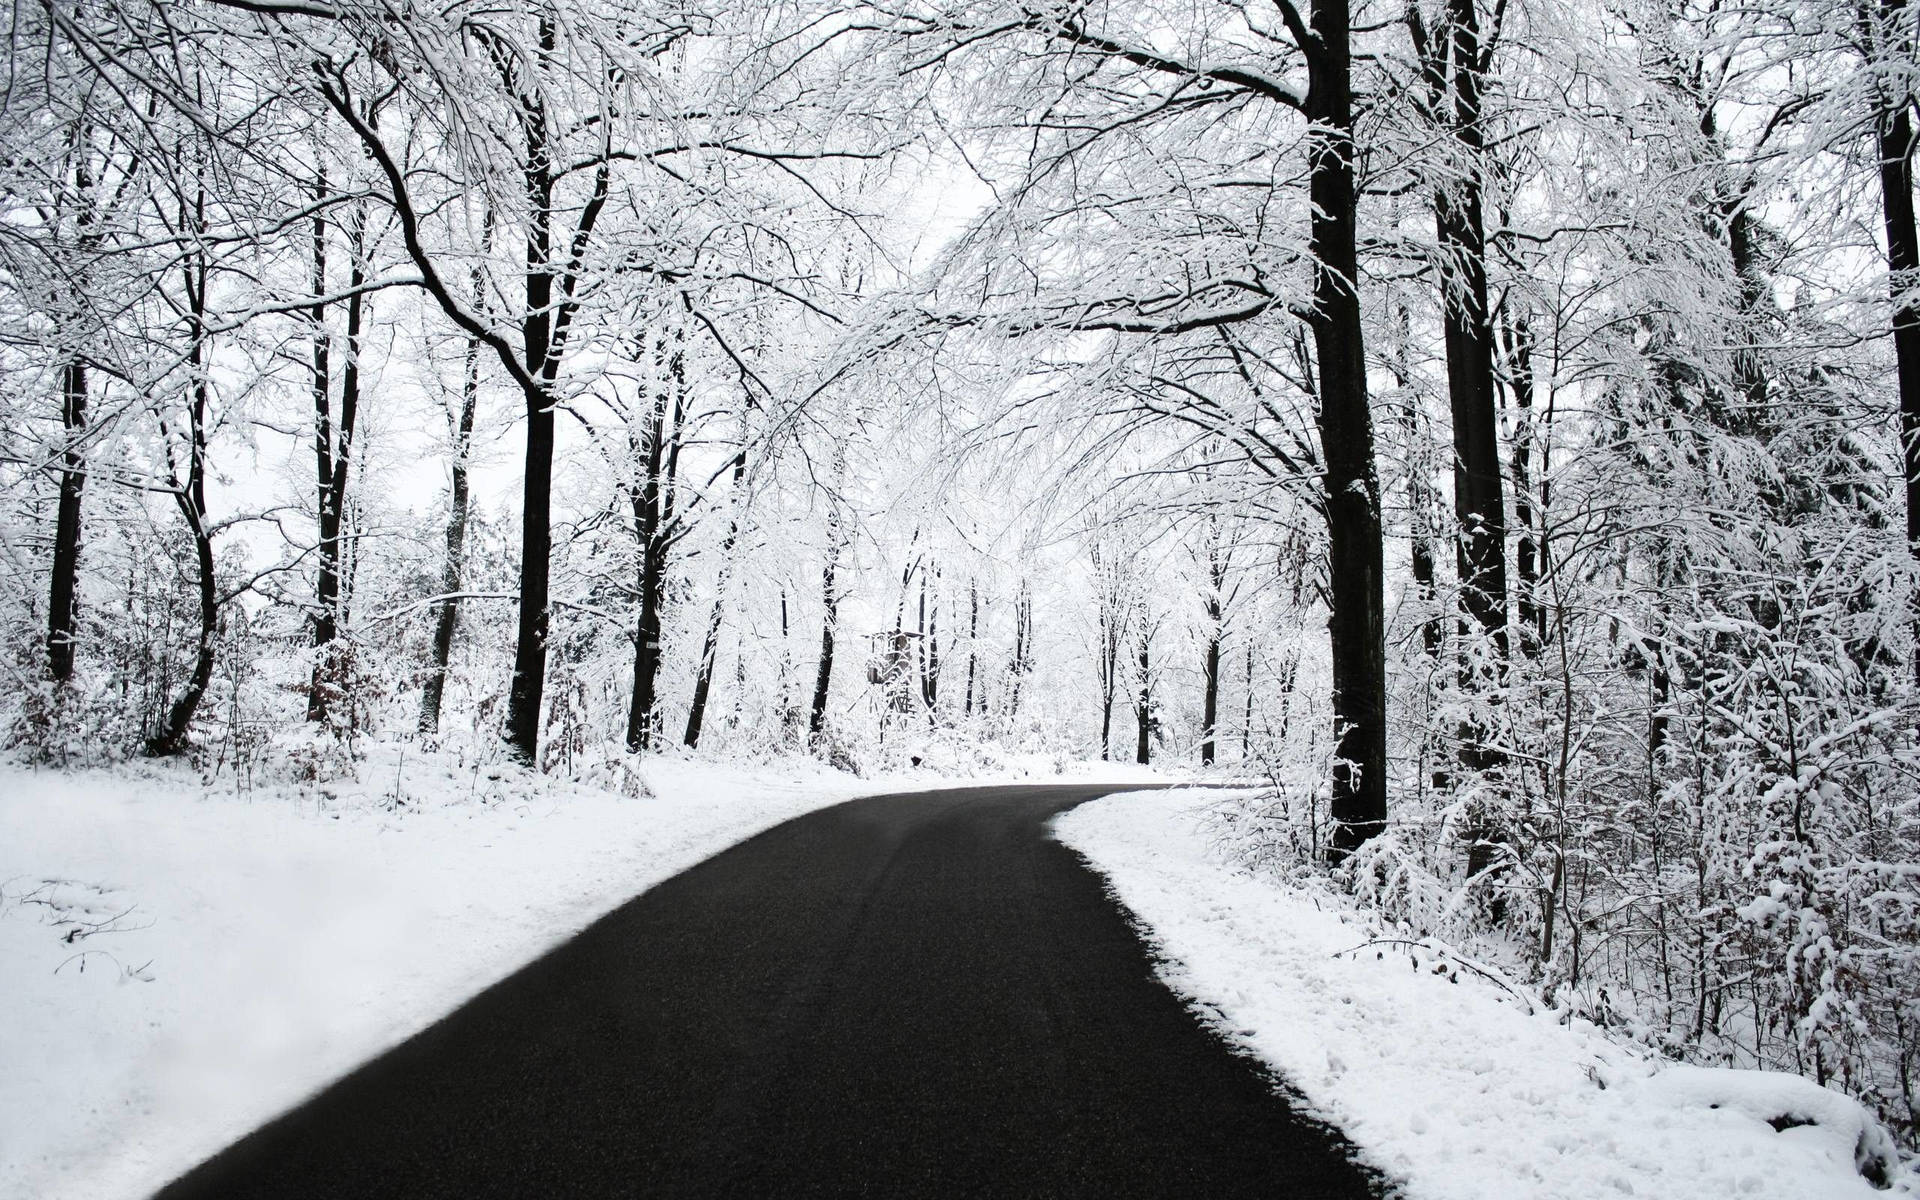 Enjoy beautiful winter scenery from your desktop Wallpaper